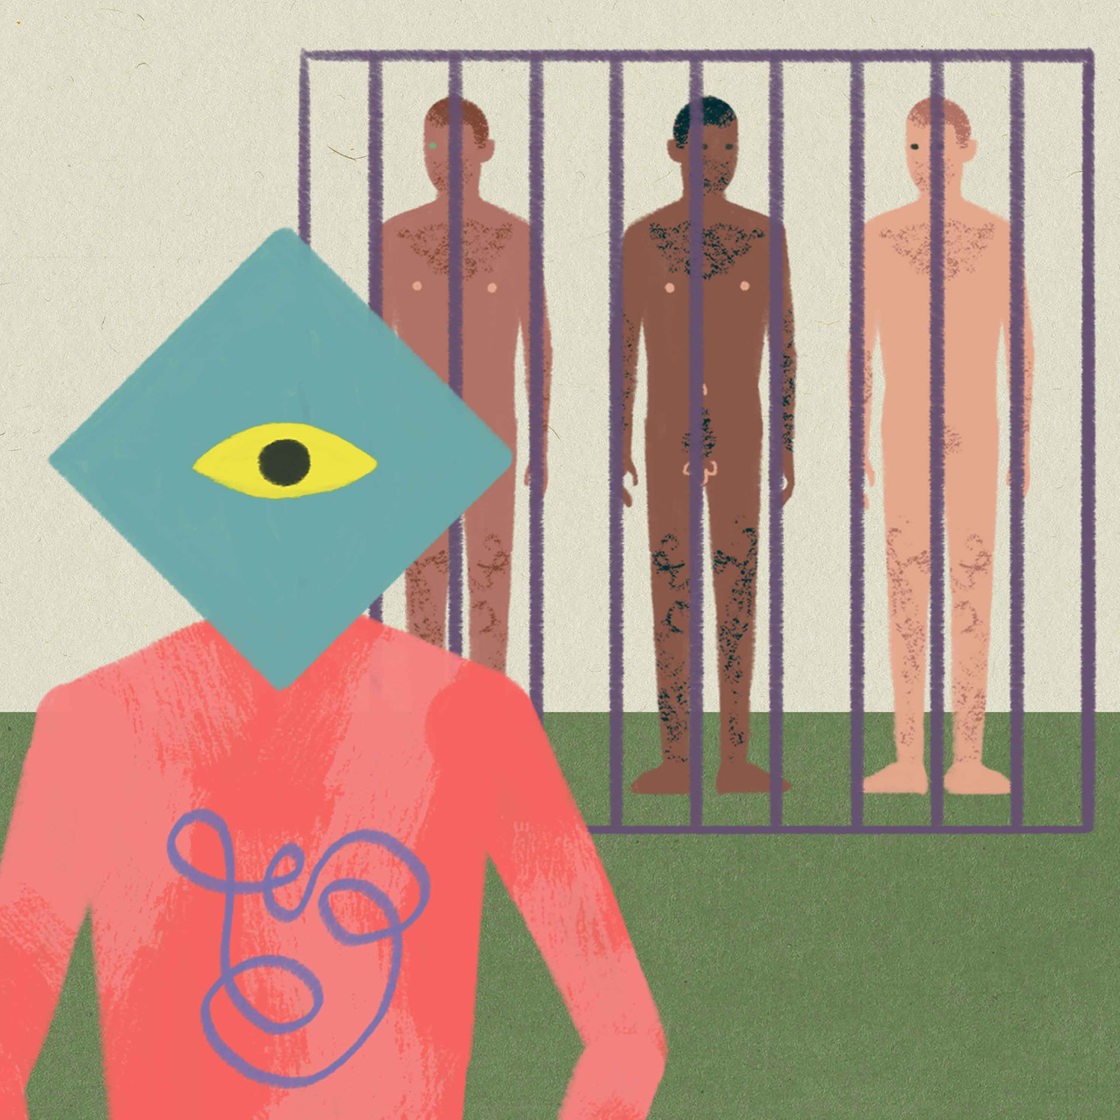 Zeichnung: Mensch mit übergroßem Auge statt Gesicht und stilisiertem Darm und drei Männer hinter Gittern